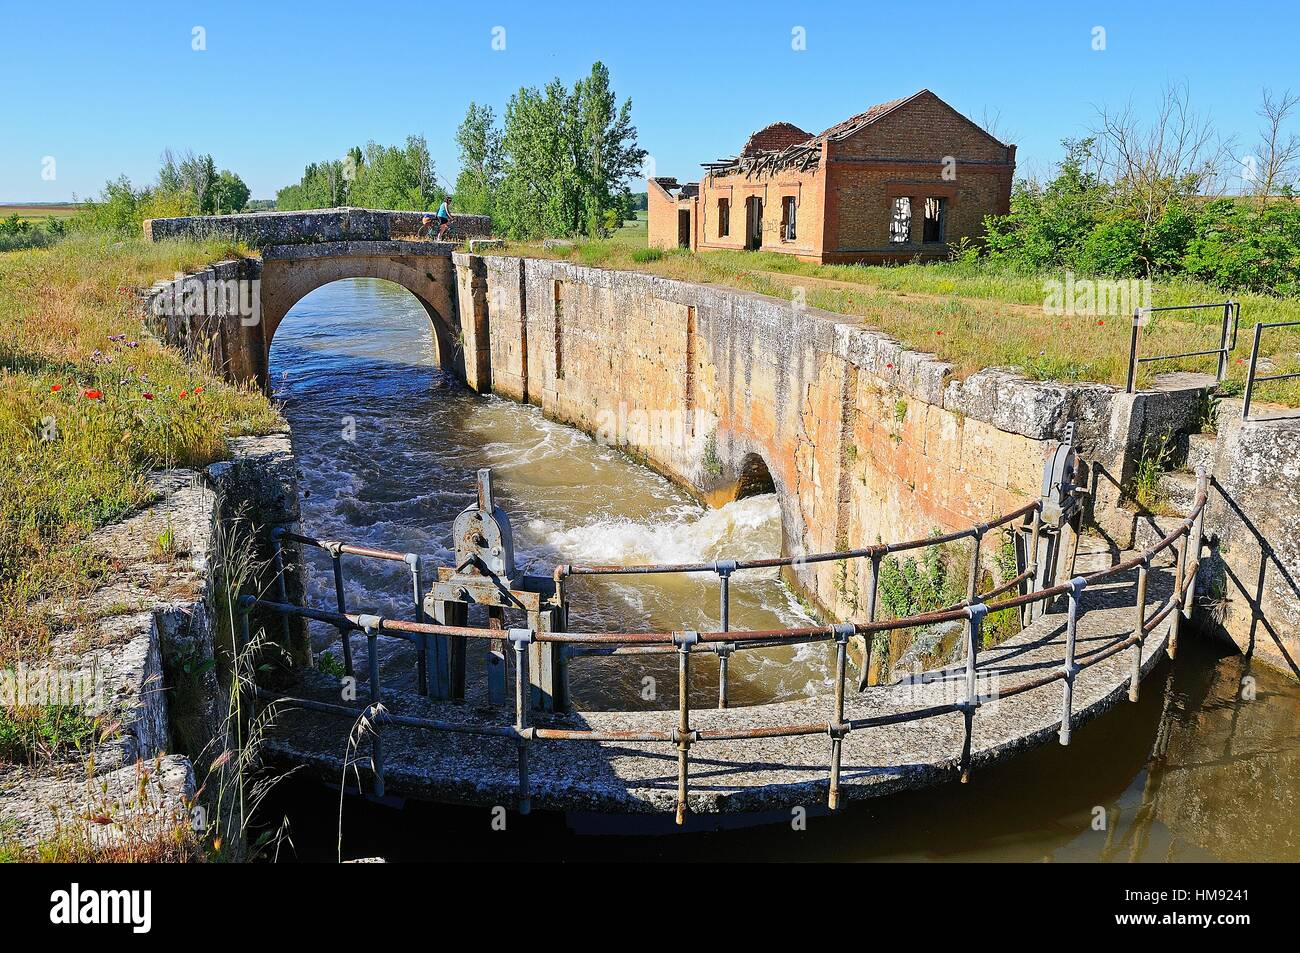 Canal de Castilla.Palencia province.Castilla y León.Spain Stock Photo -  Alamy